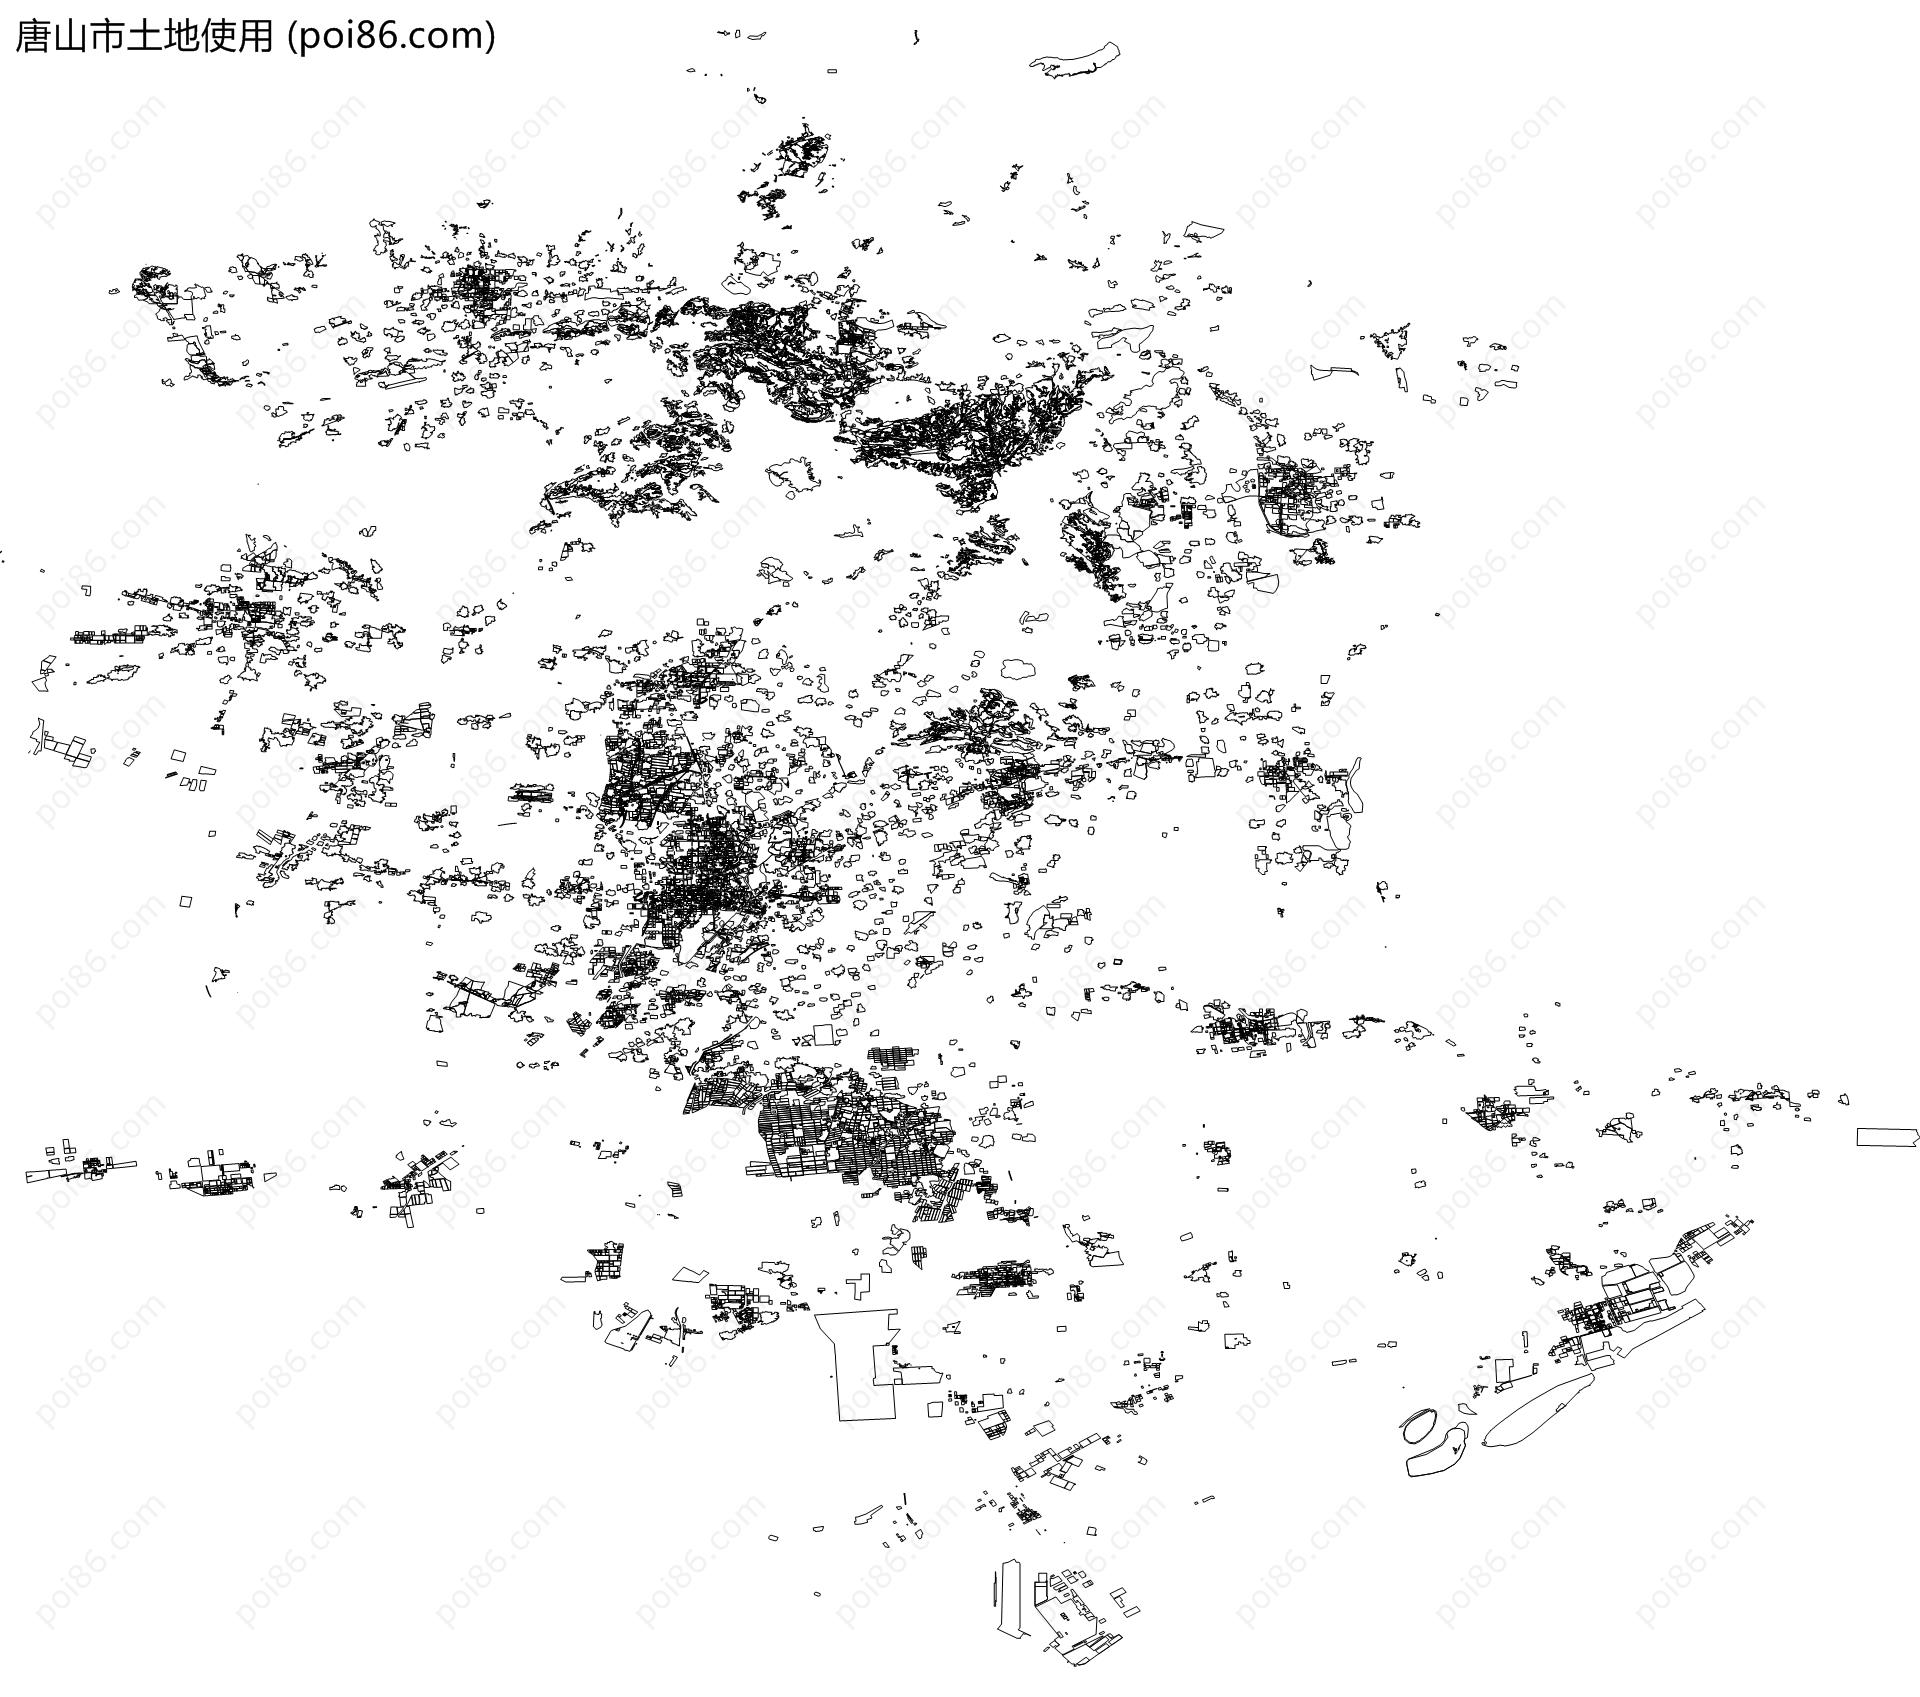 唐山市土地使用地图